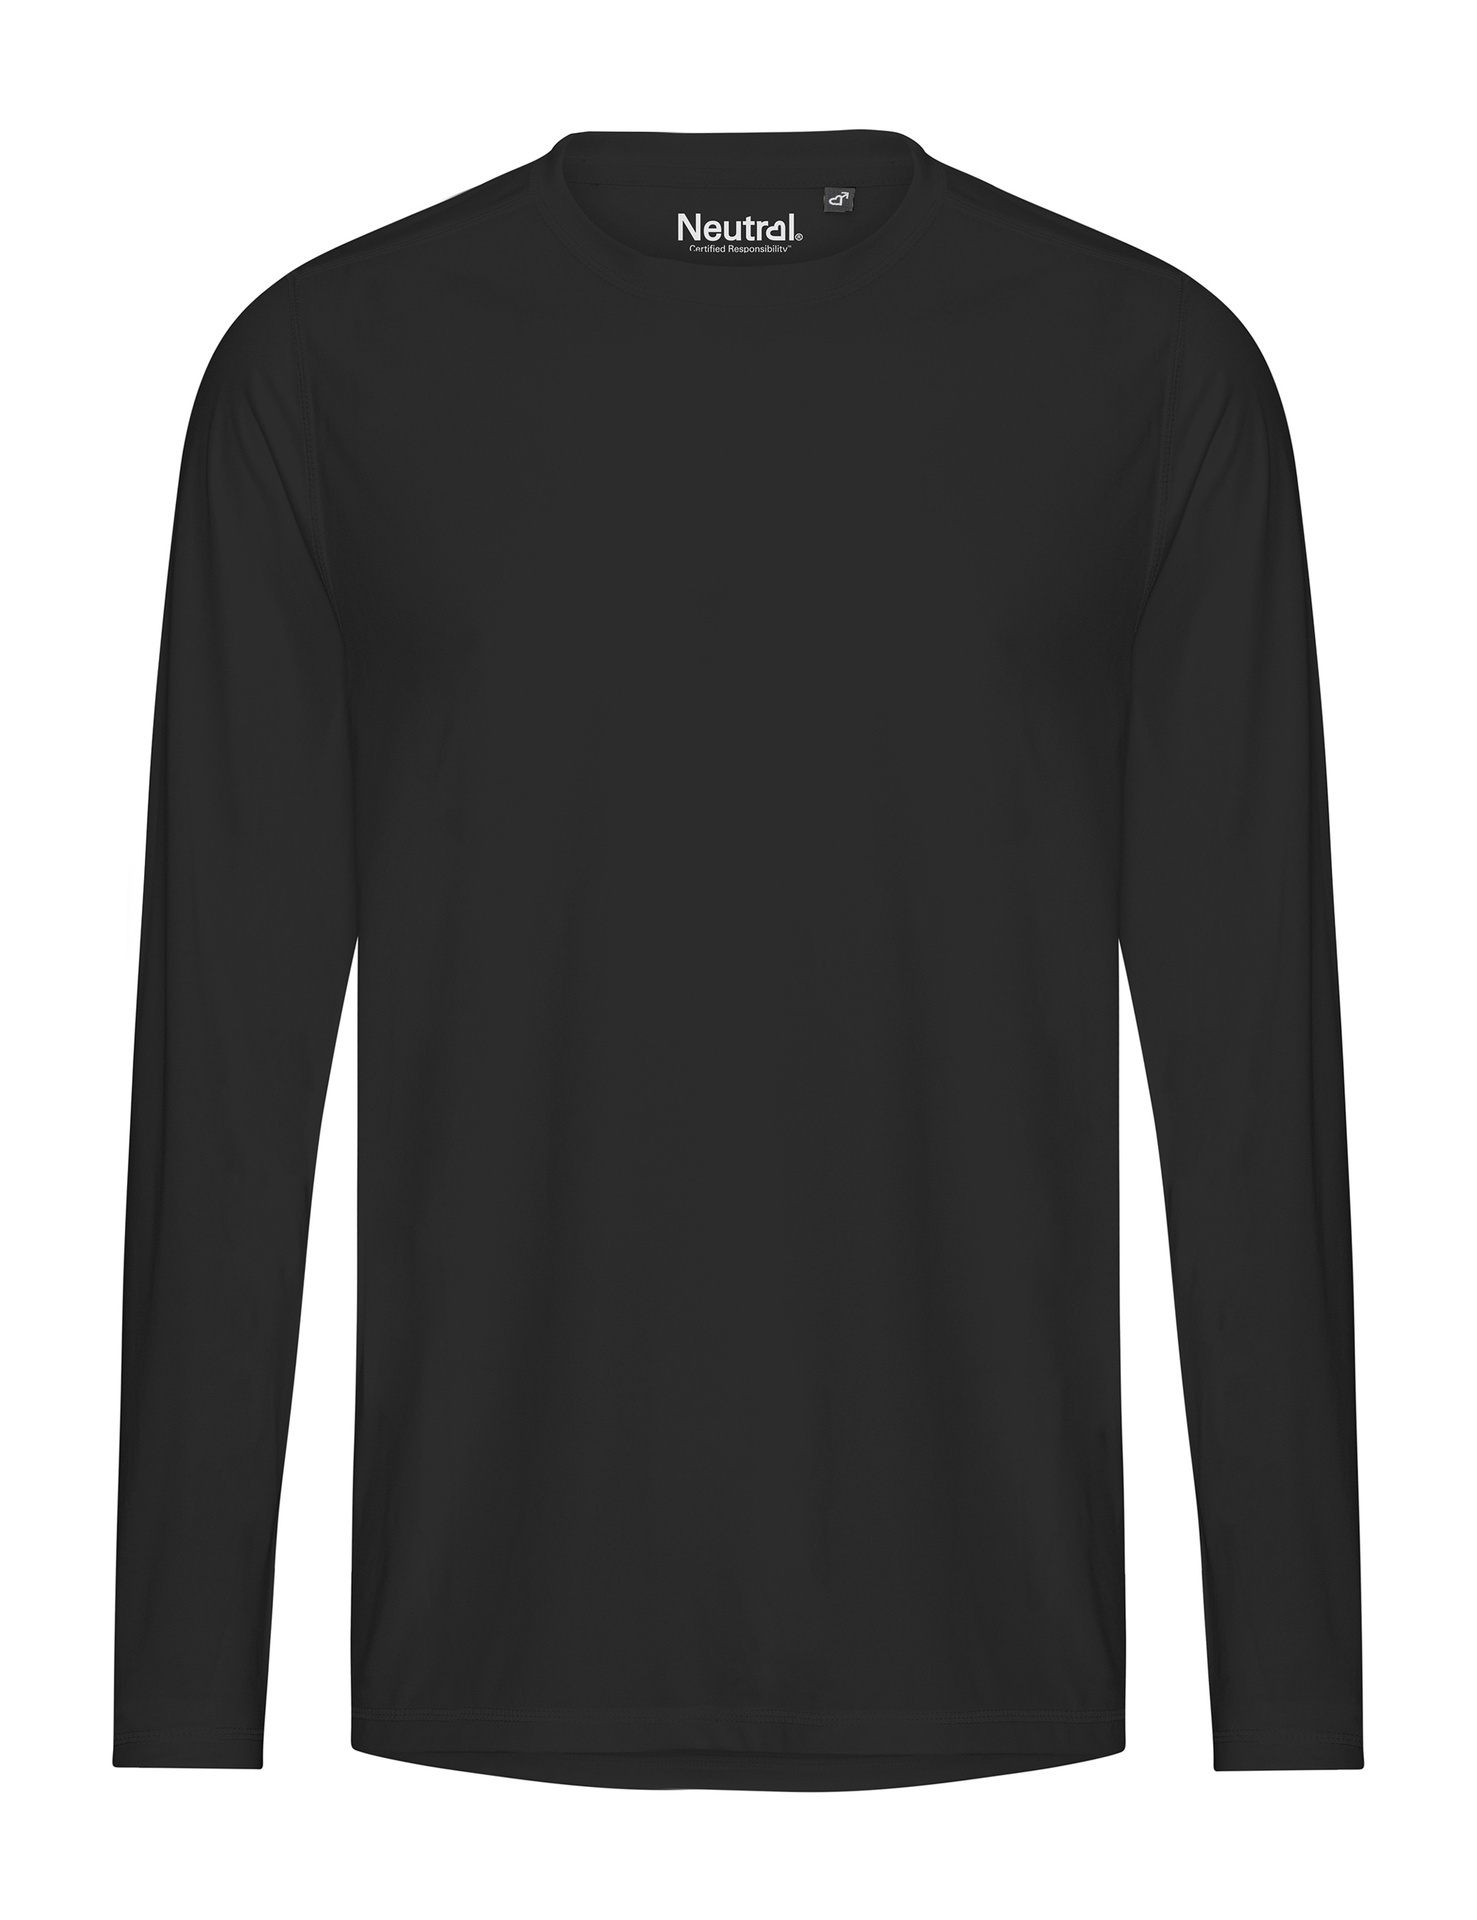 [PR/03827] Recycled Performance LS T-Shirt (Black 03, M)